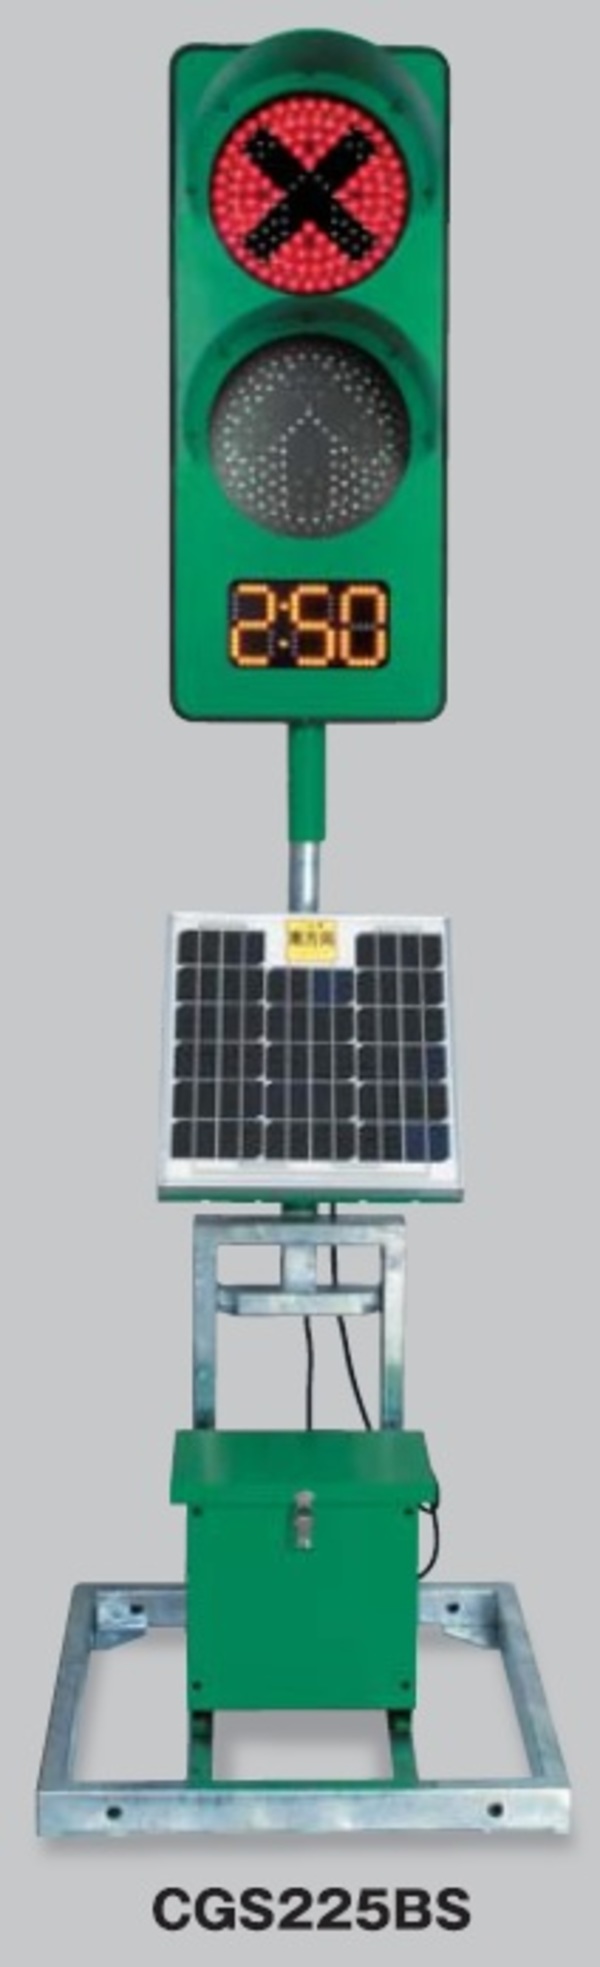 GPSソーラー信号機2のサムネイル